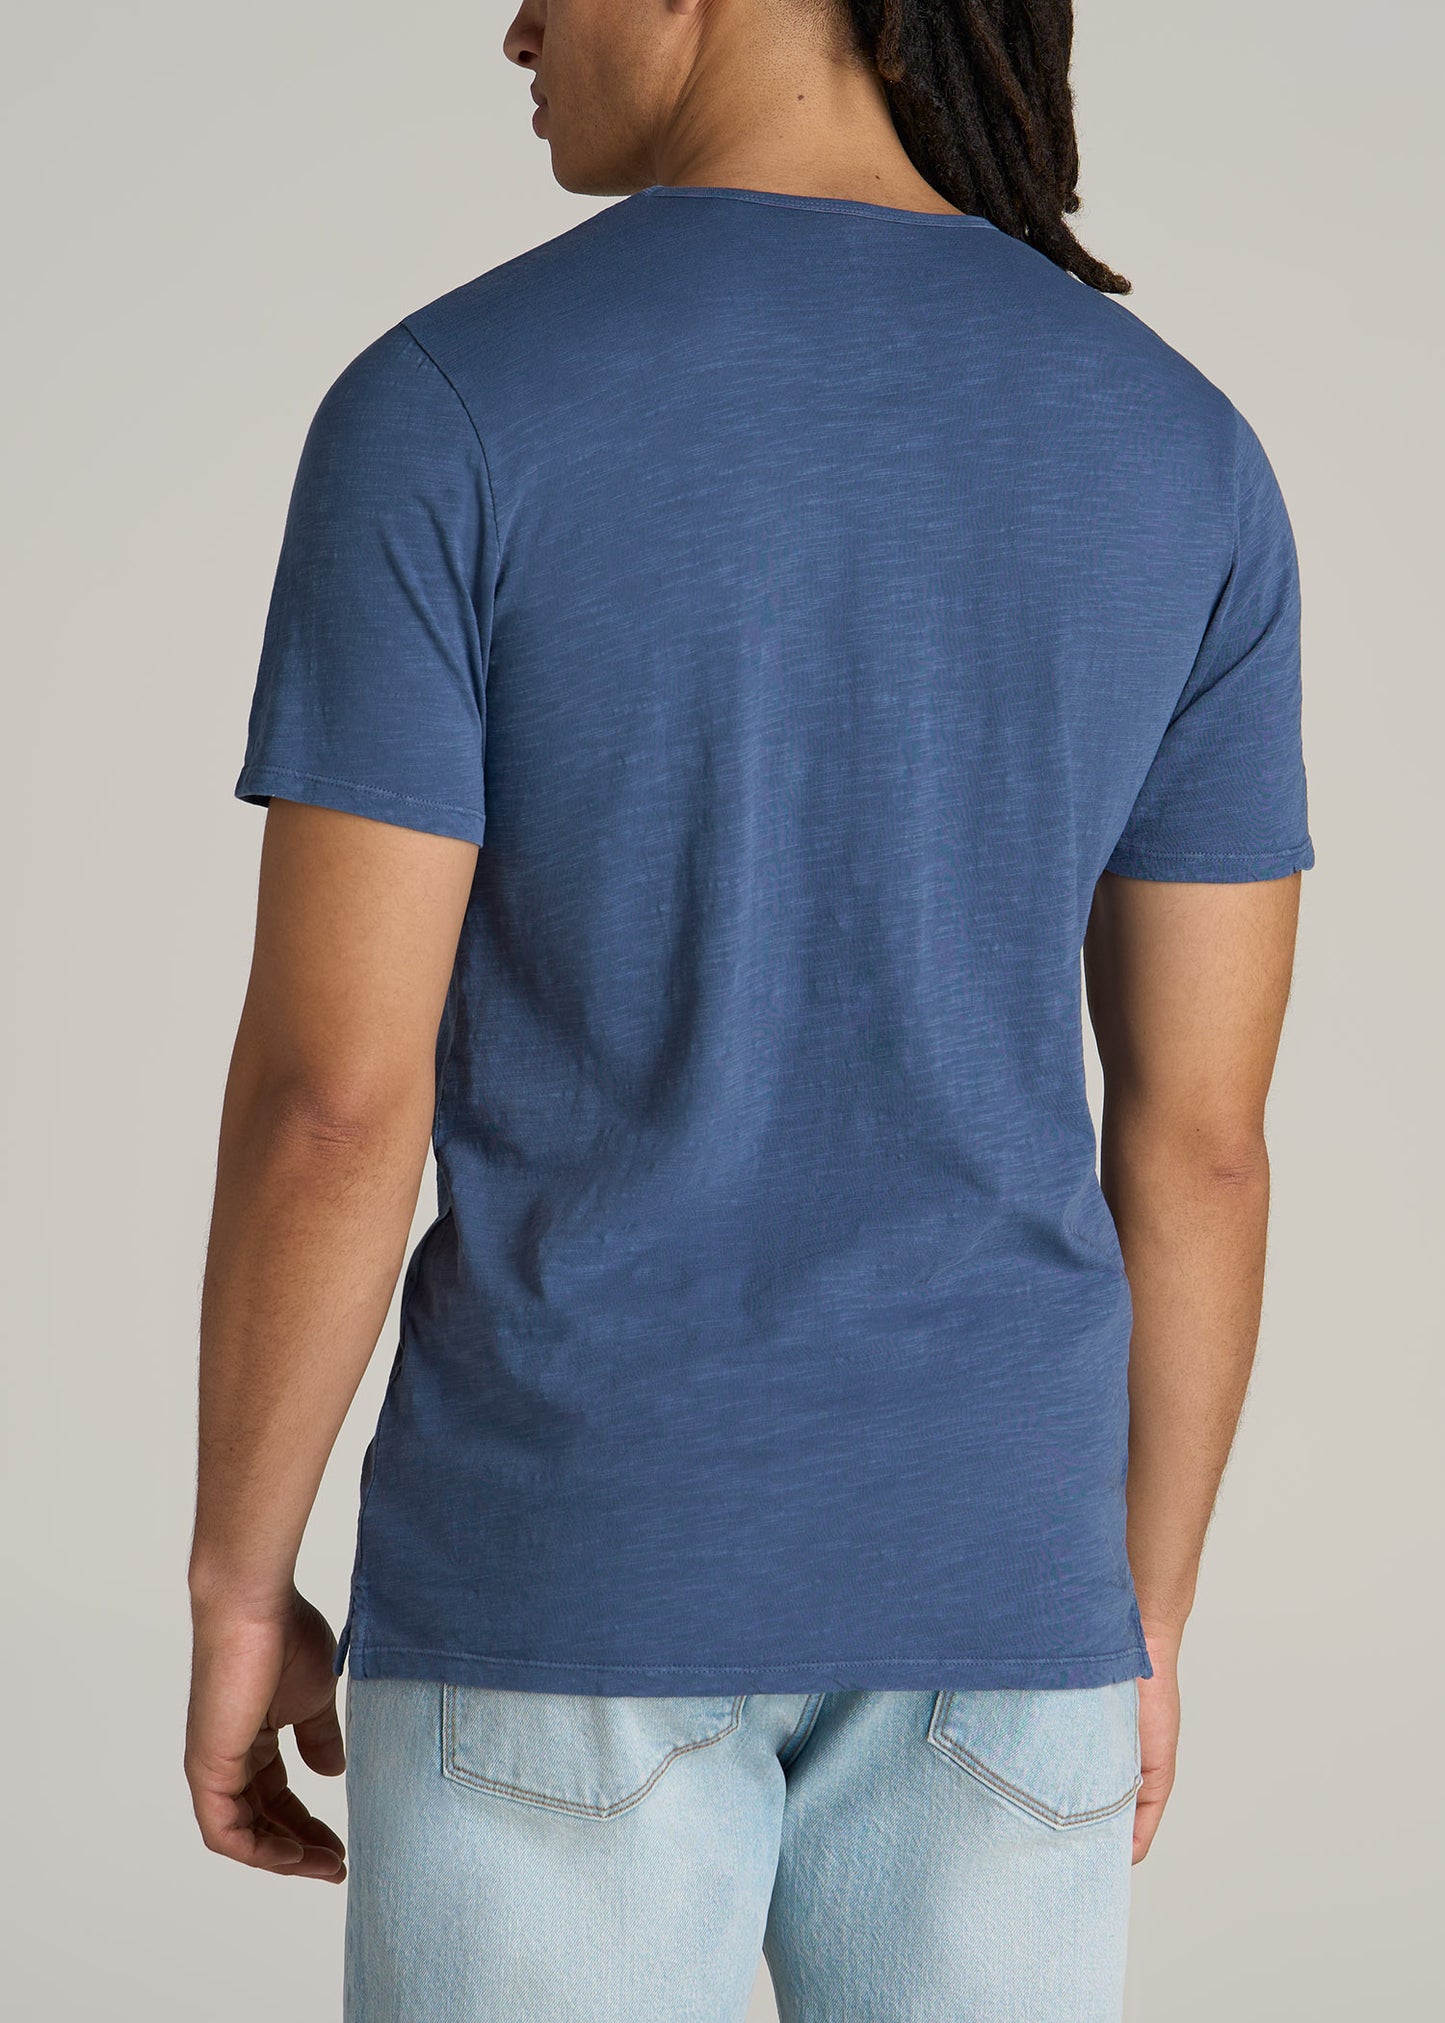 Slub Tee in Steel Blue - Tall Men's Shirts